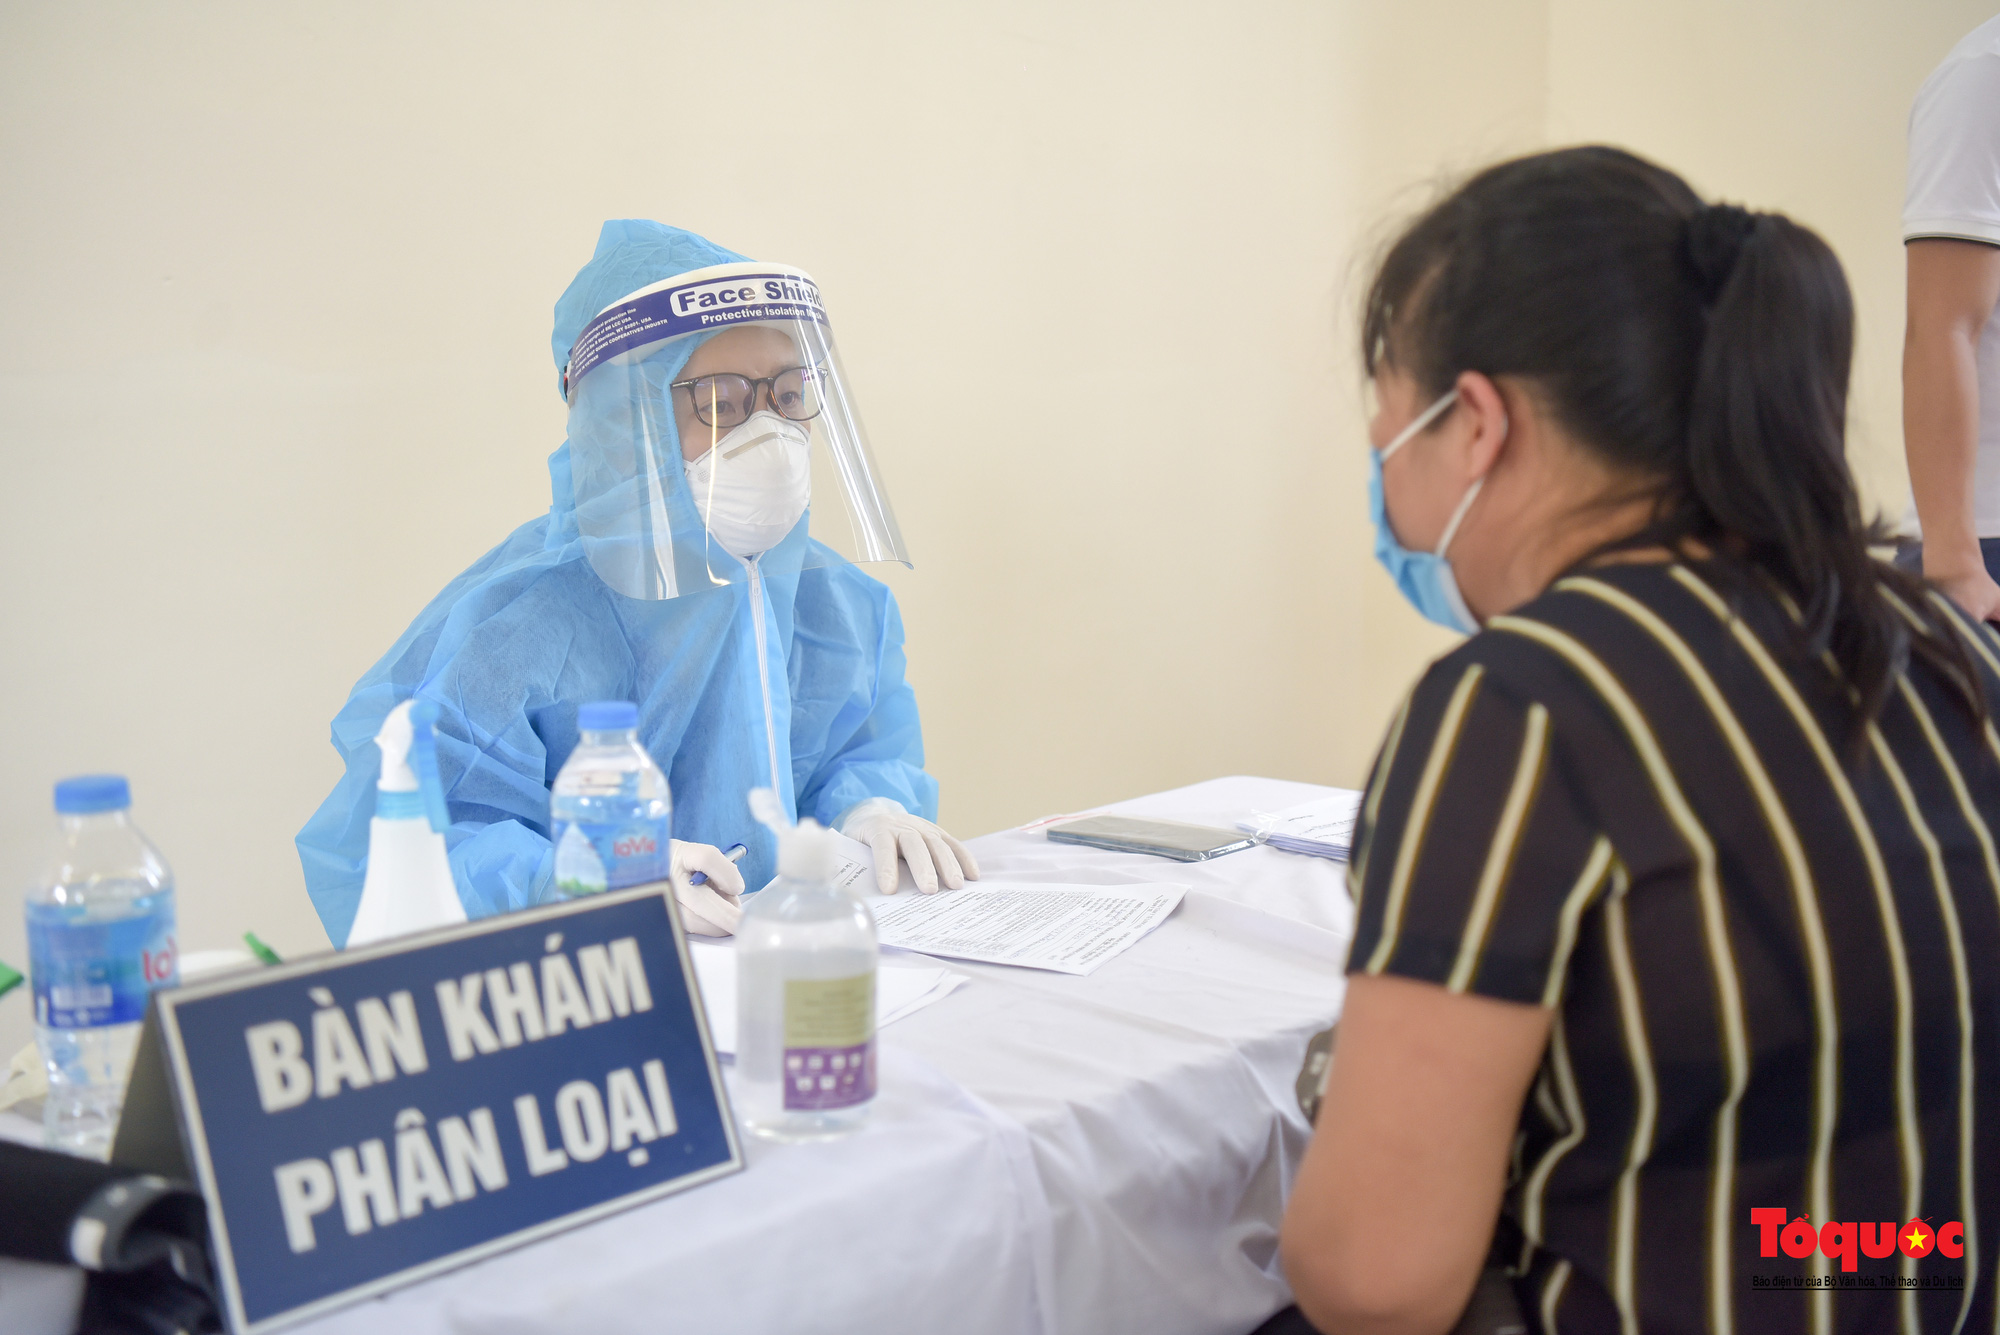 Đoàn y bác sĩ Bắc Giang hỗ trợ tiêm vaccine Vero Cell tại Hà Nội - Ảnh 3.